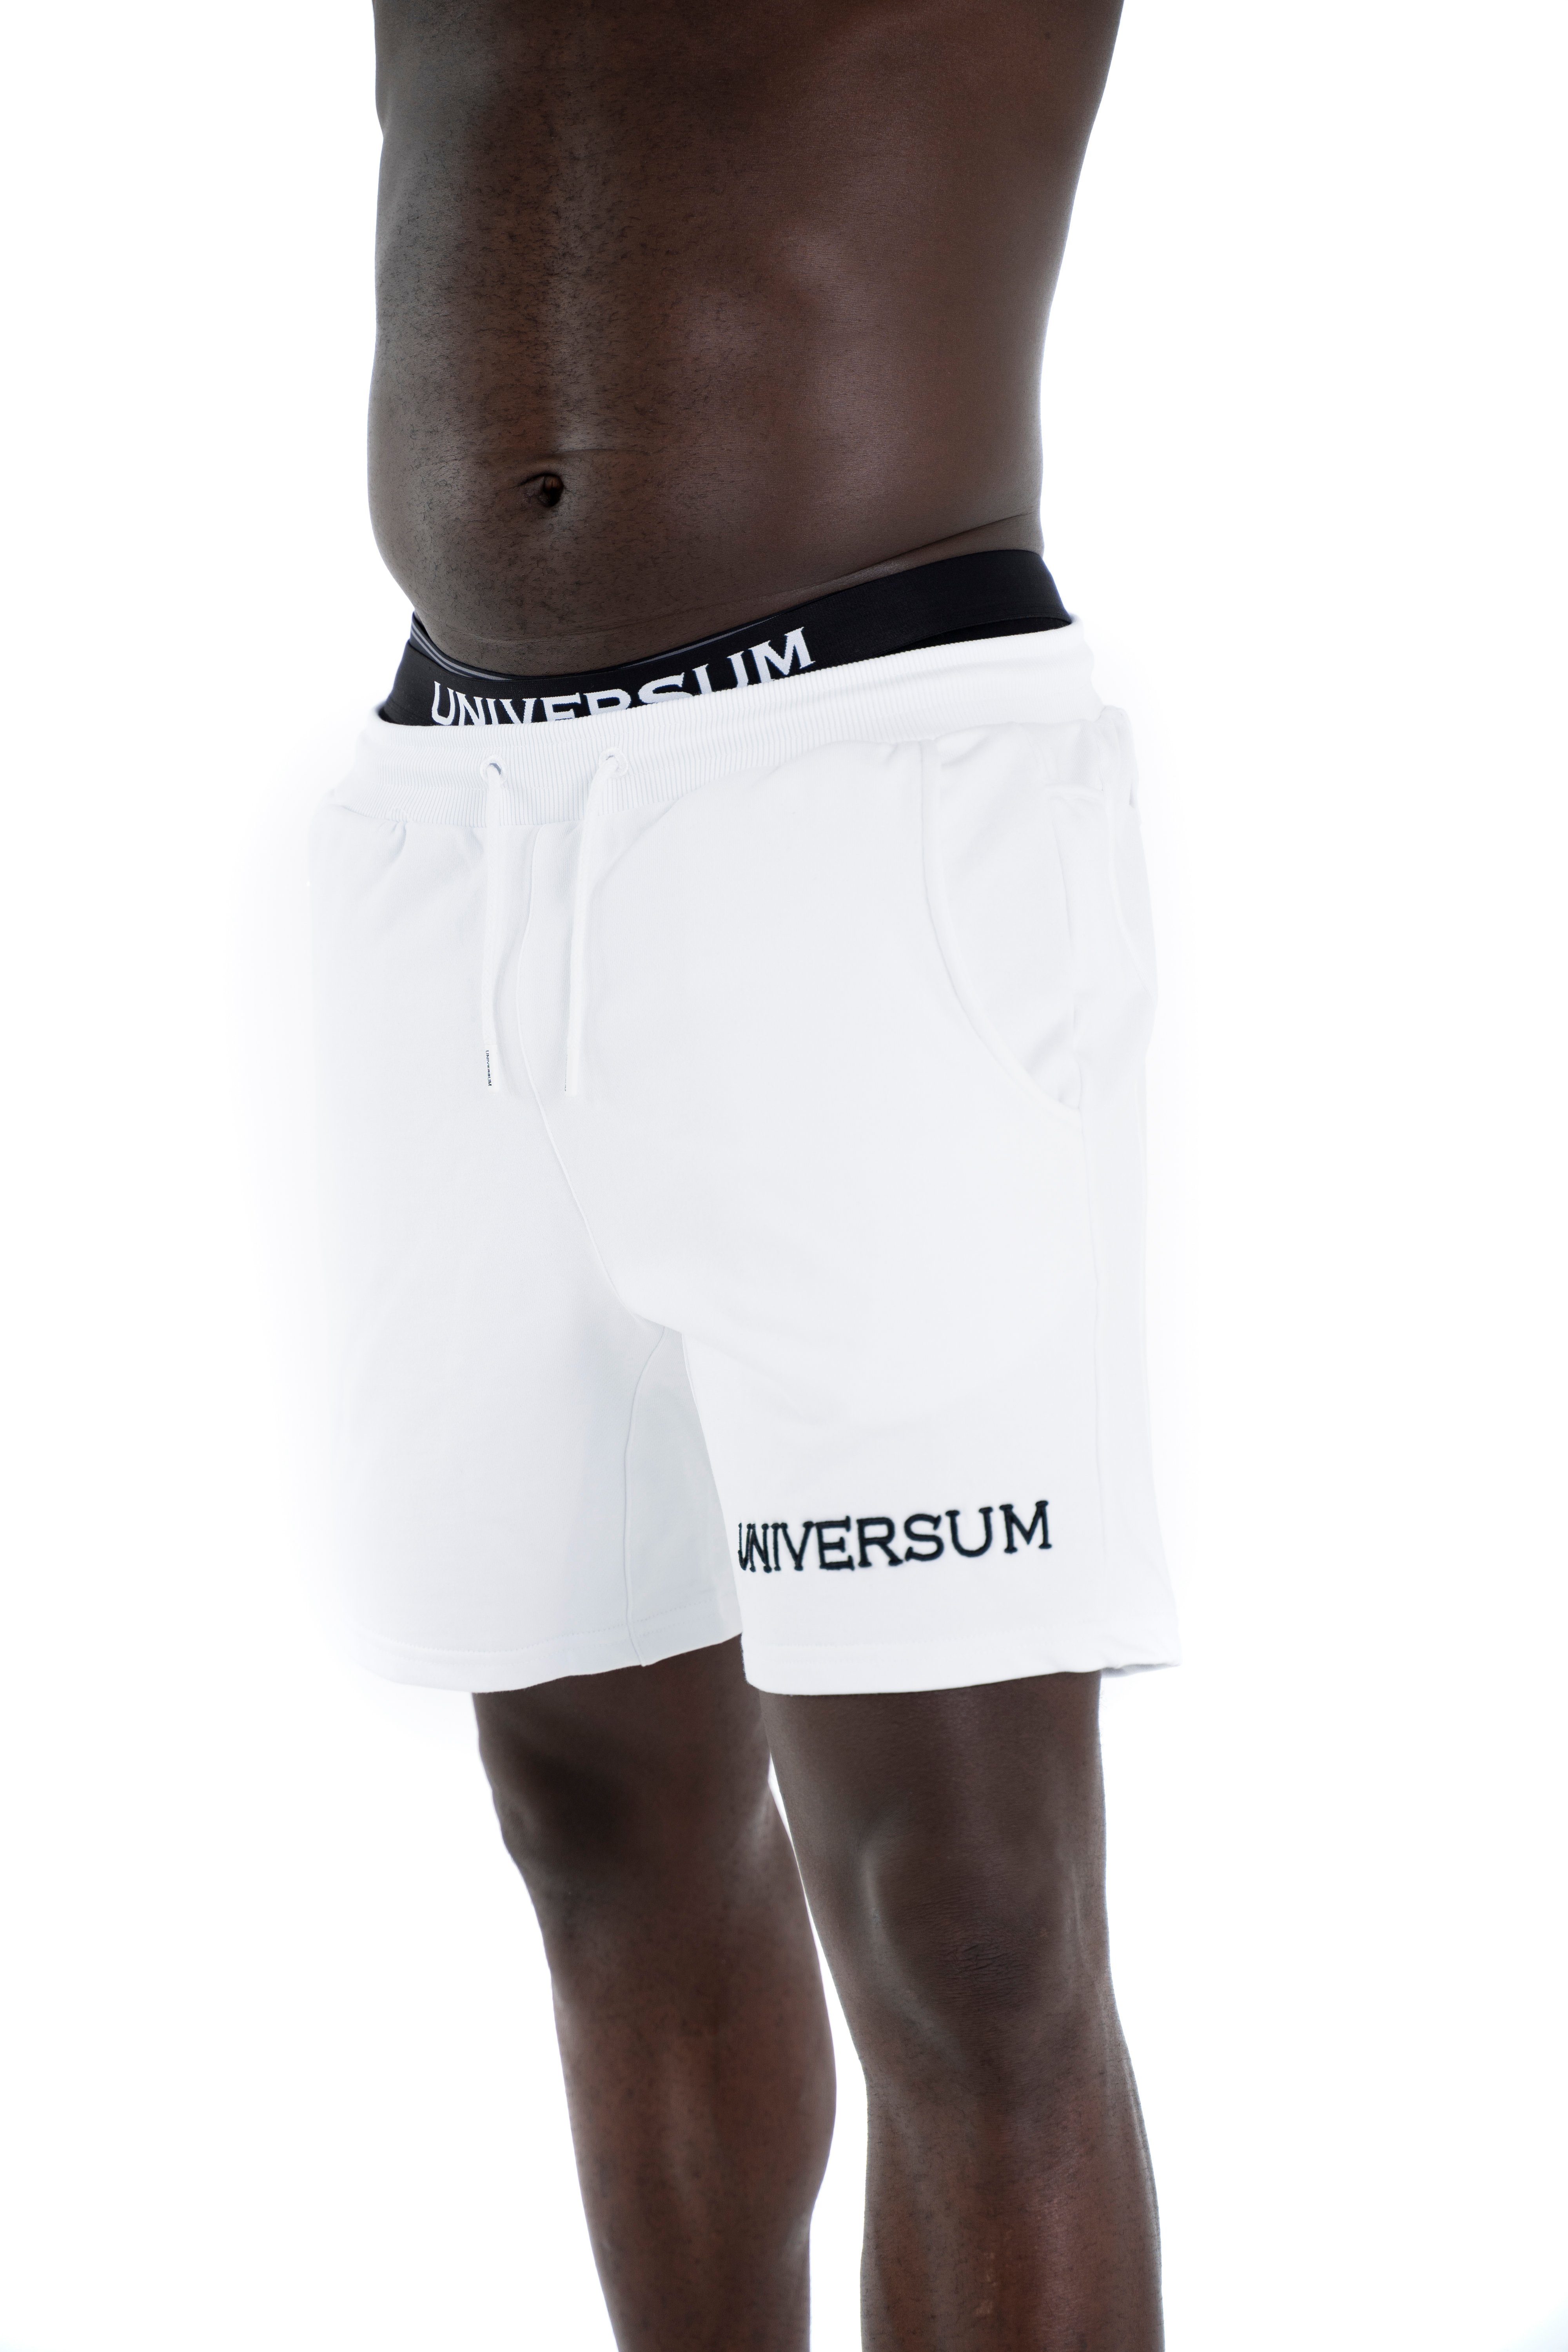 Freizeit Shorts Fitness Sportwear Cotton Weiß Sport, Shorts Modern für Sweatshorts Universum und Kurze